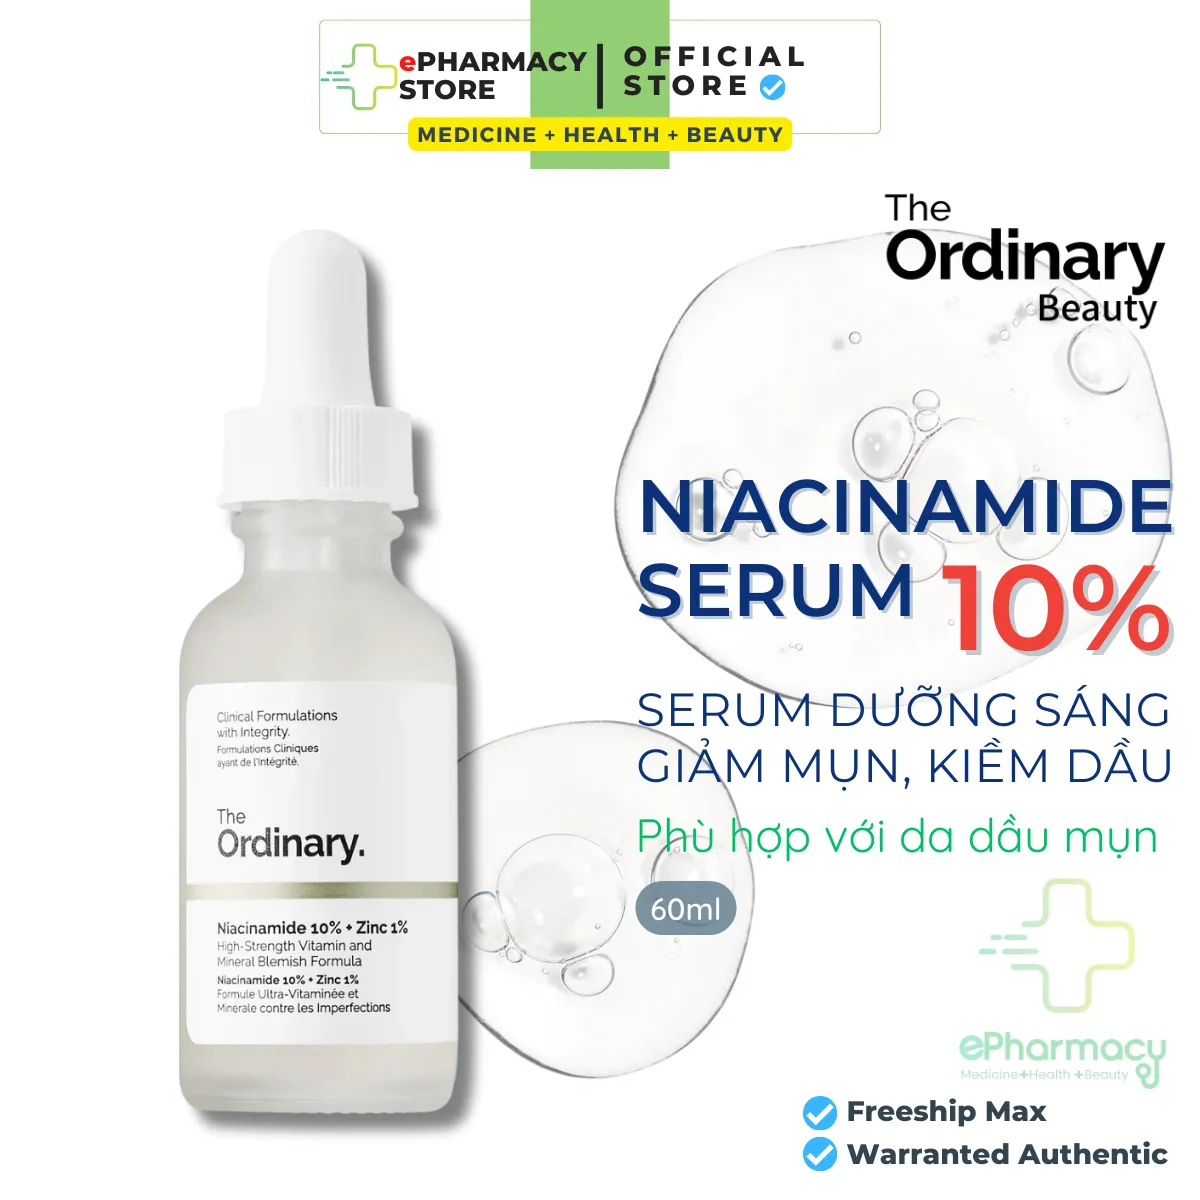 Serum Niacinamide 10% + Zinc 1% The Ordinary - Tinh Chất The Ordinary kiềm dầu giảm mụn giảm thâm 60ml